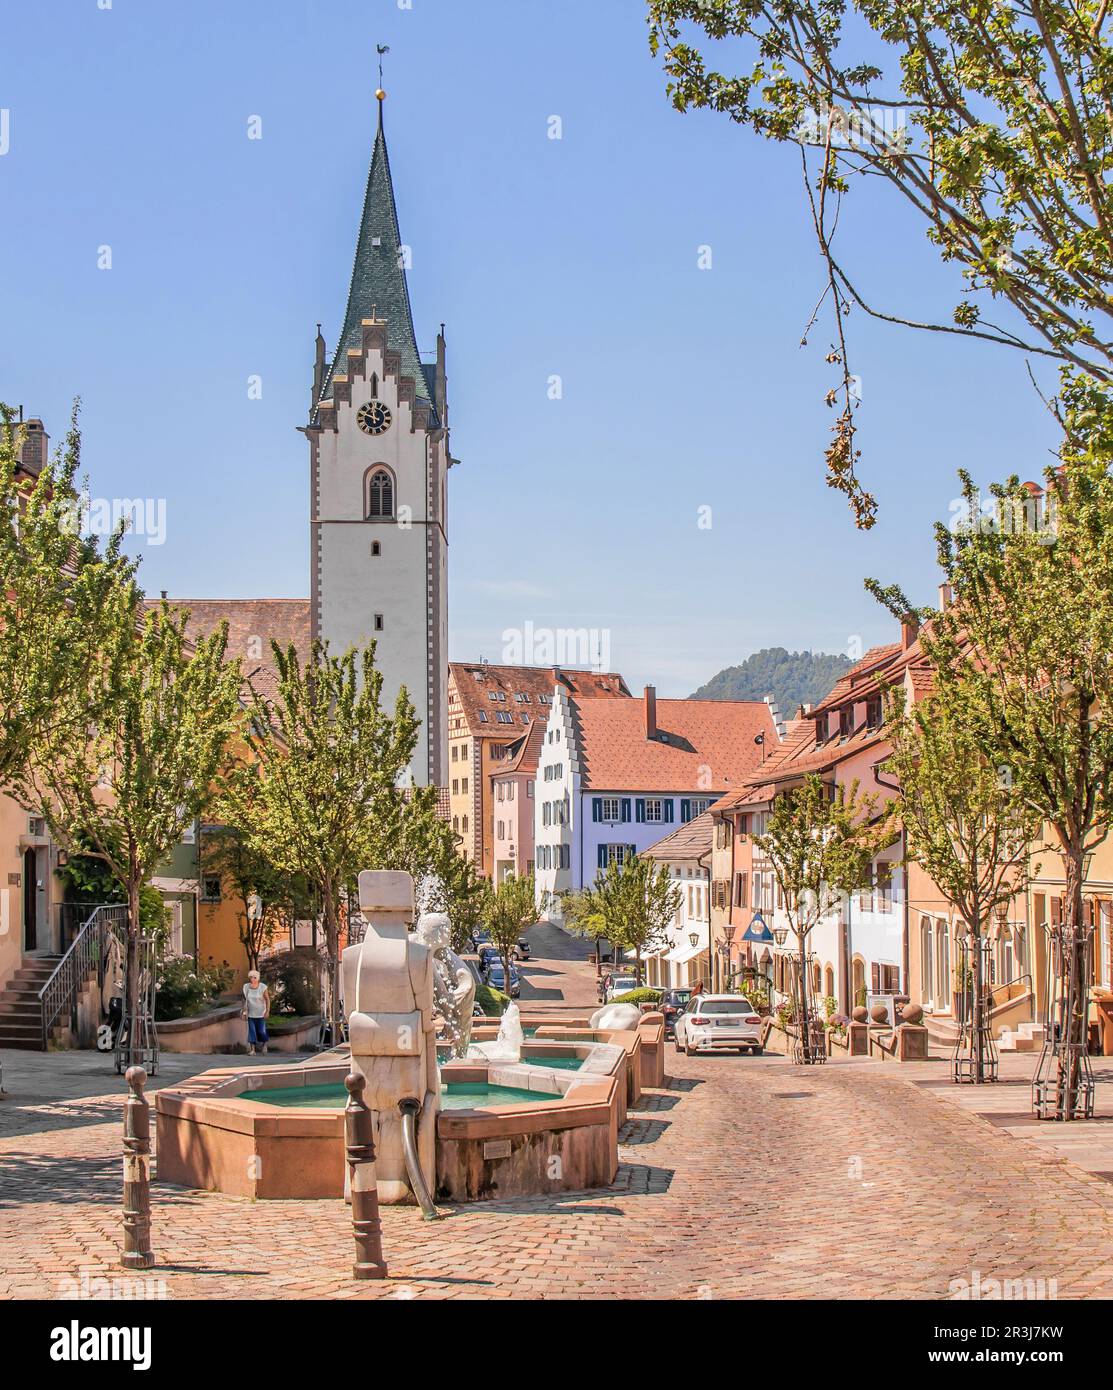 Das  mittelalterliche Hegaustädtchen Engen mit der Fußgängerzone und der Stadtkirche Mariä Himmelfahrt Stock Photo